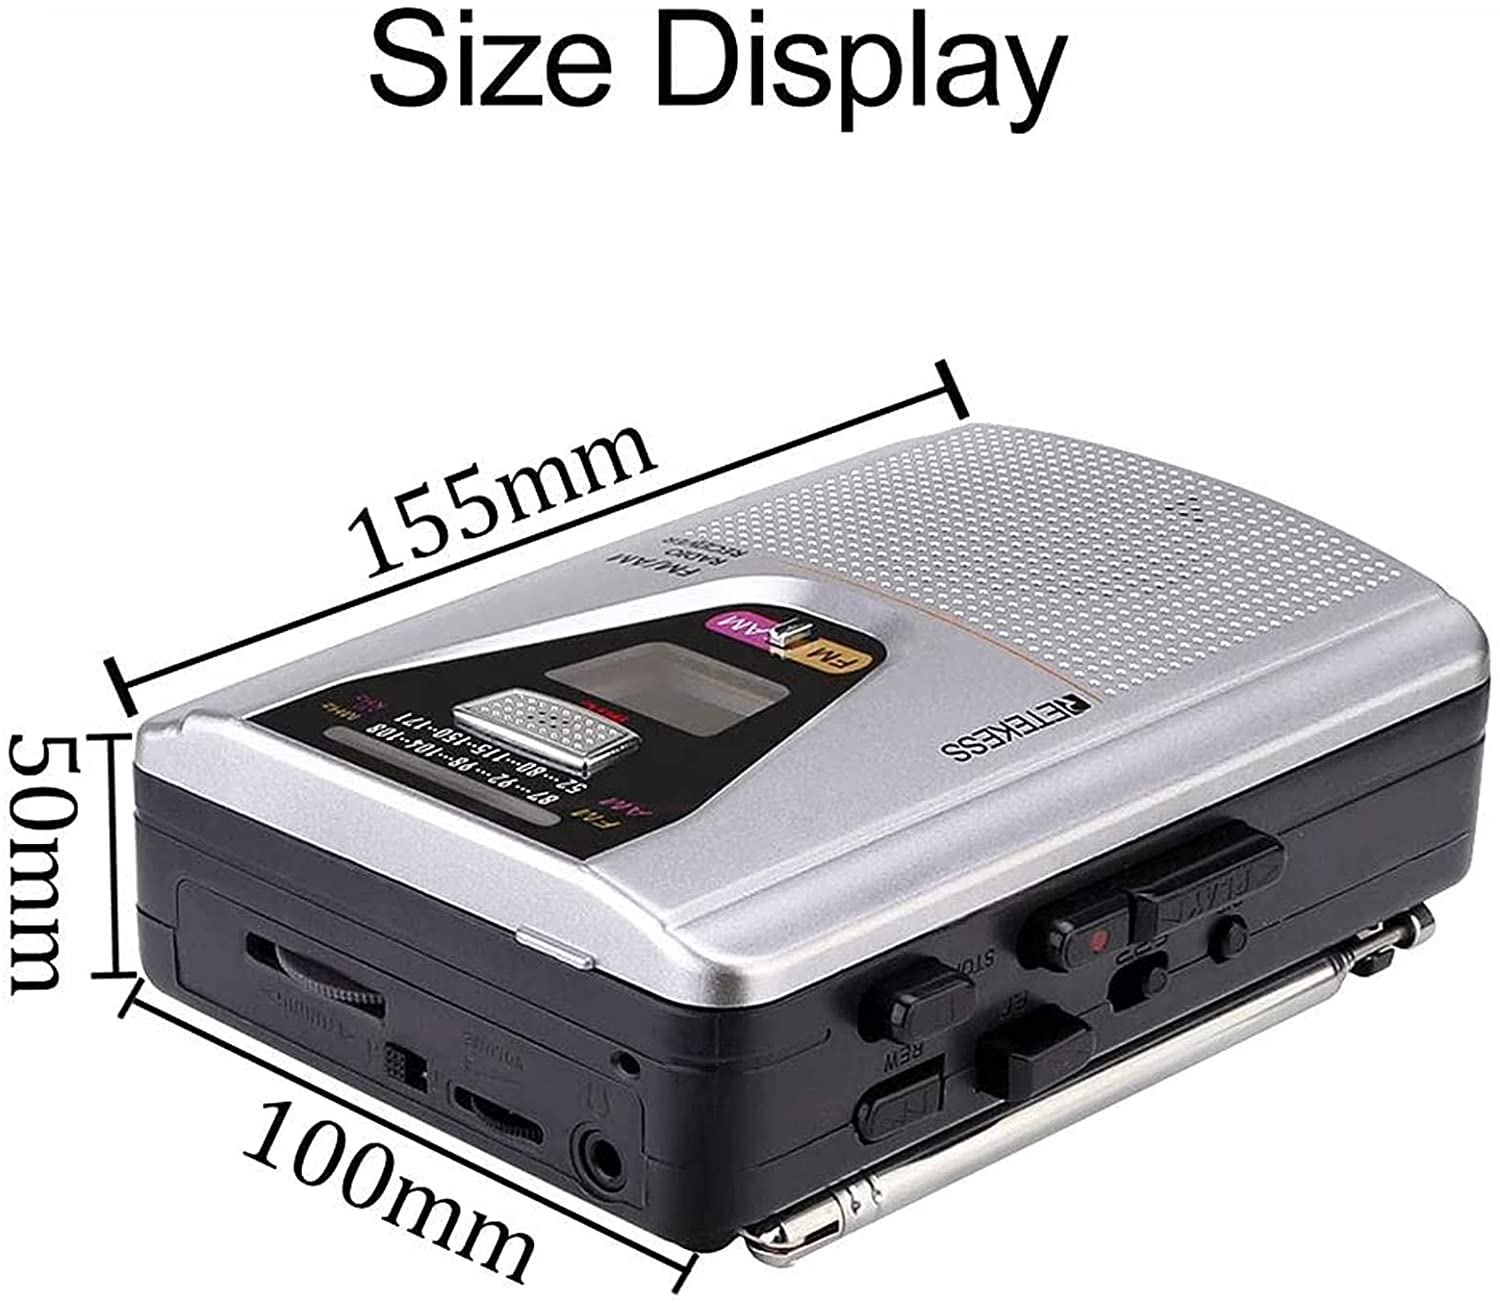 Retekess TR620 Cassette Player Walkman Portable AM/FM Audio Built-in Speaker and Microphone, Suitable for Cassette Collectors